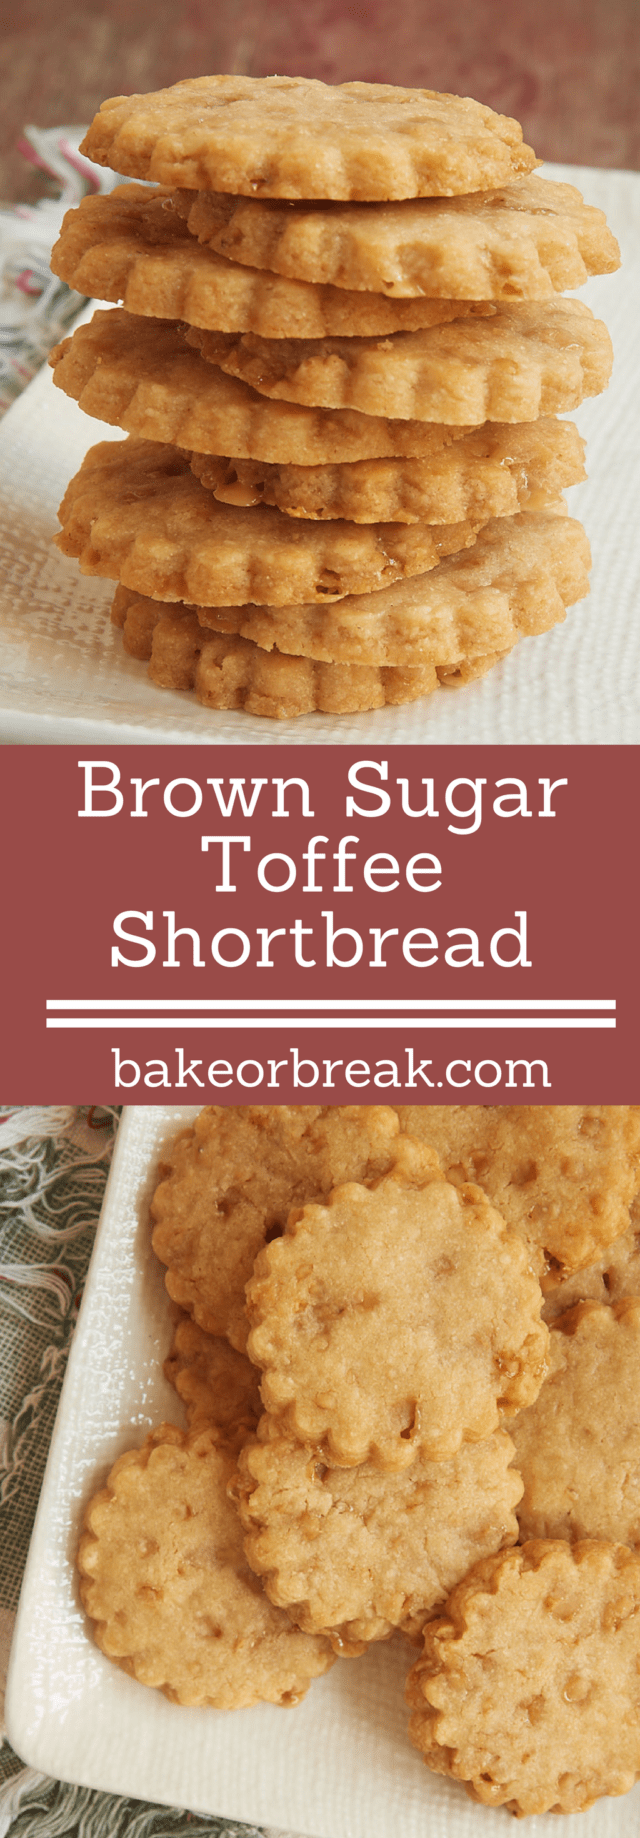 Brown Sugar Toffee Shortbread bakeorbreak.com